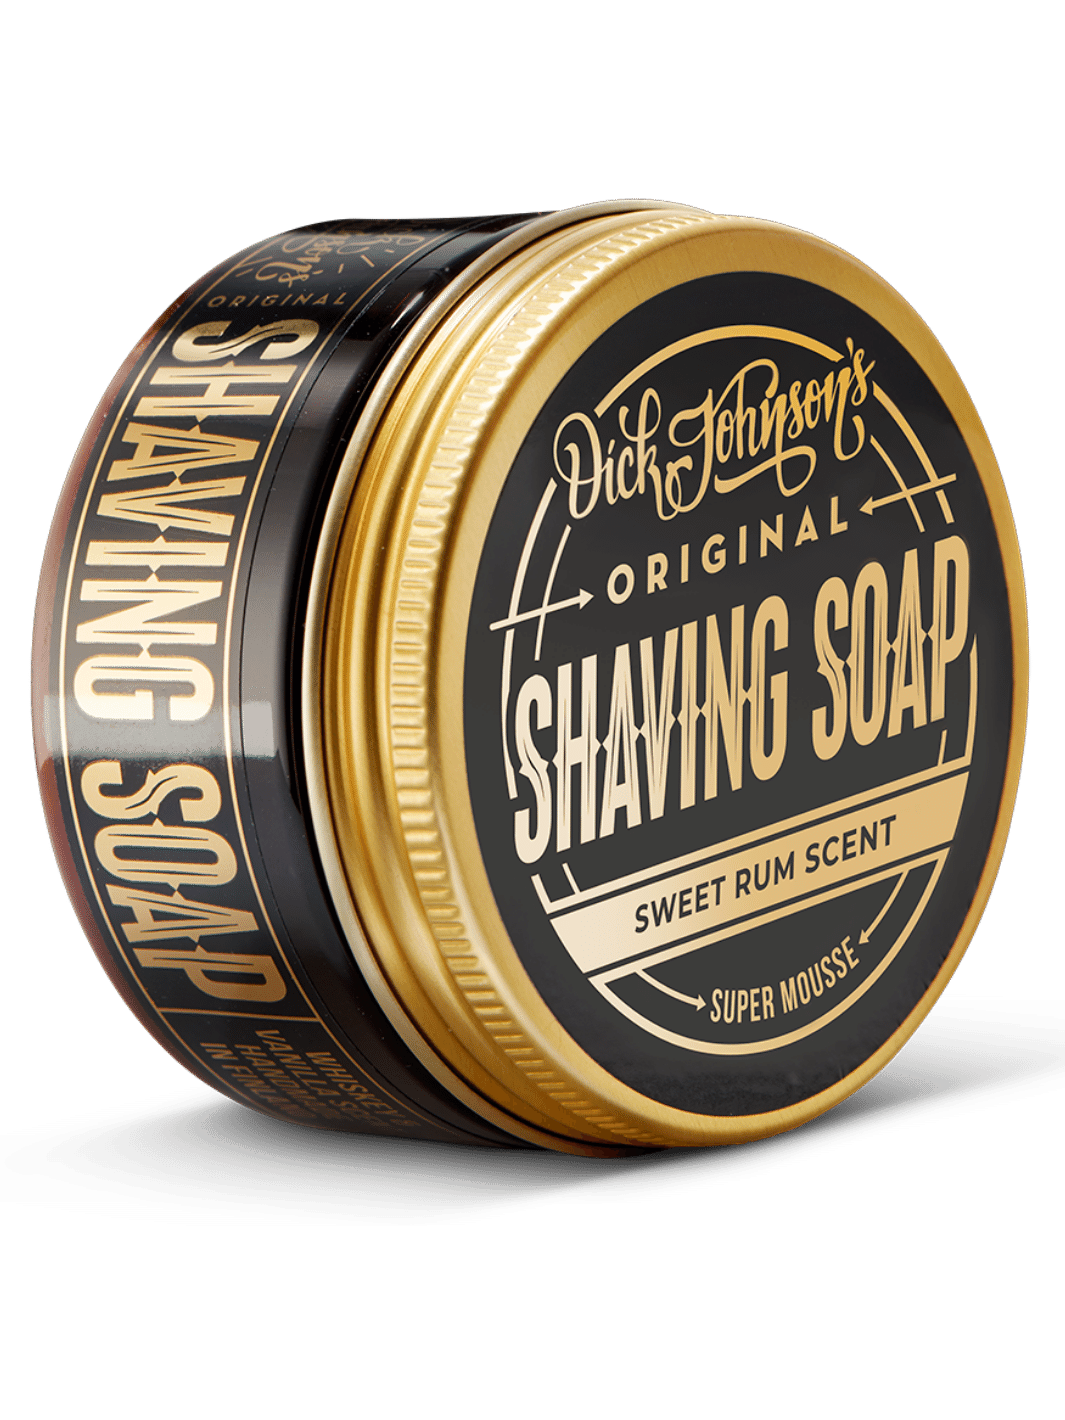 Dick Johnson Shaving Soap mit süßem Rum-Duft, 80g, kreiert einen luxuriösen Schaum für eine glatte und angenehme Rasur, jetzt bei Phullcutz verfügbar.